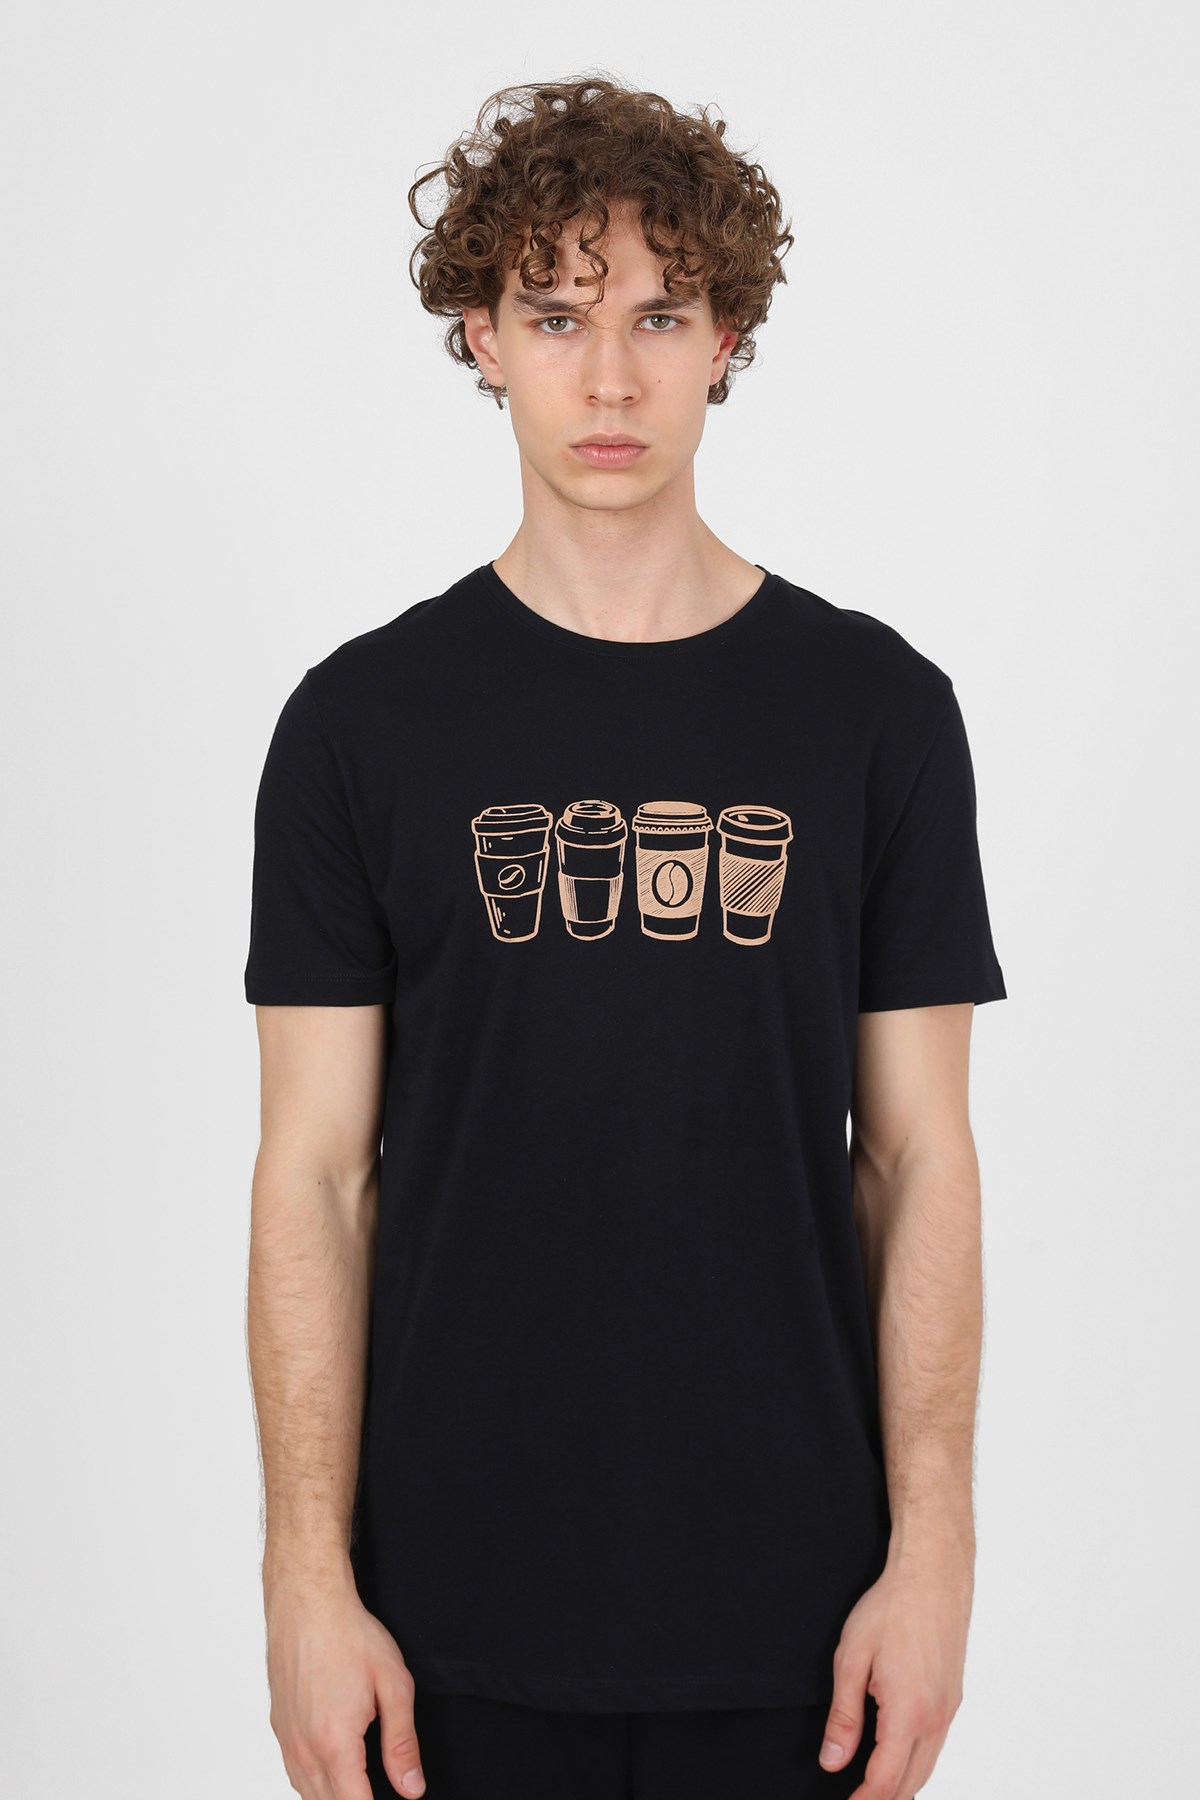 Erkek Baskılı T-Shirt | JOHN FRANK Baskılı Tişört Modelleri